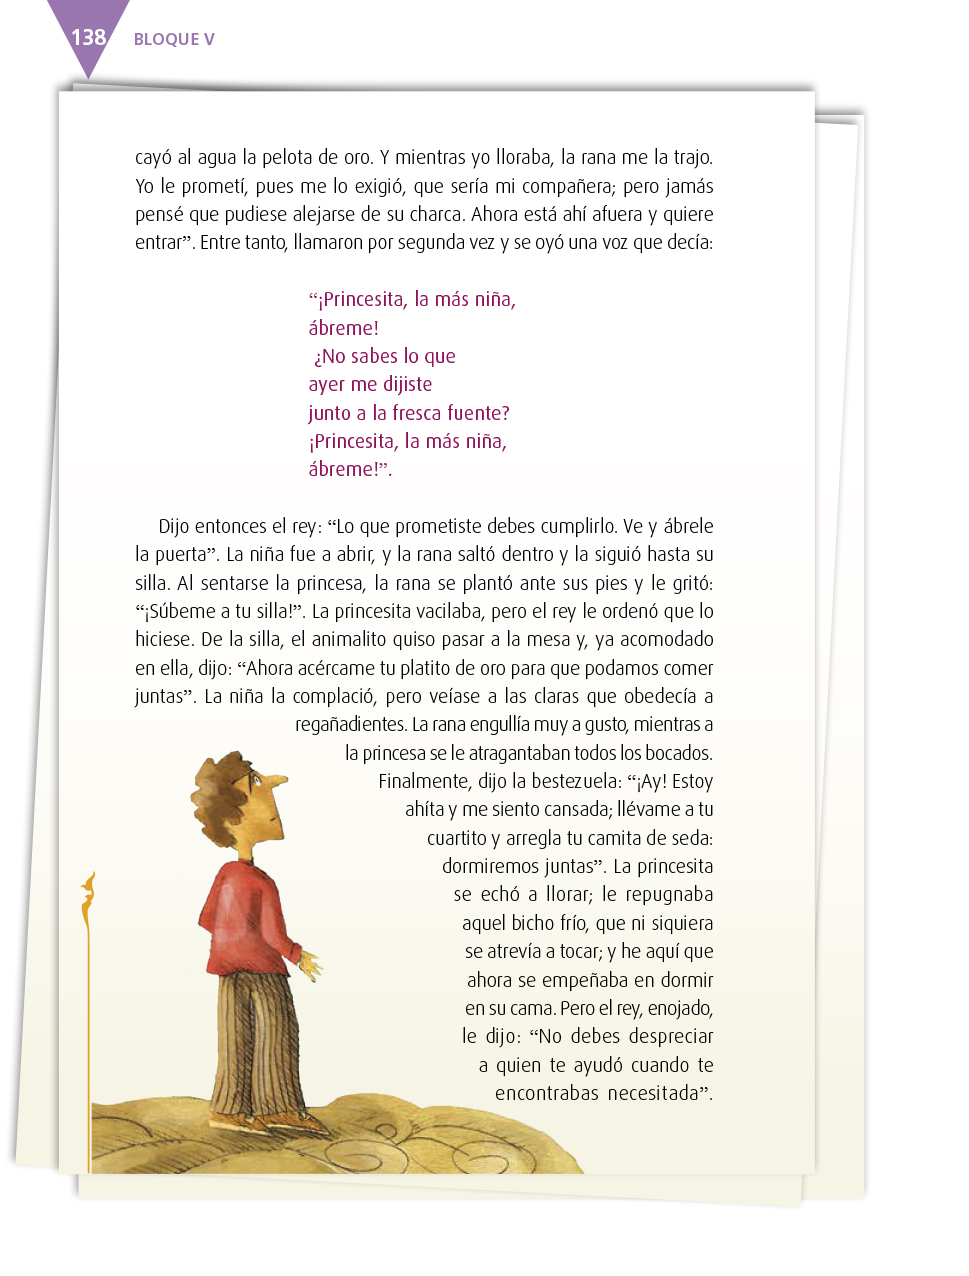 Español Cuarto grado 2017-2018 - Página 138 - Libros de Texto Online